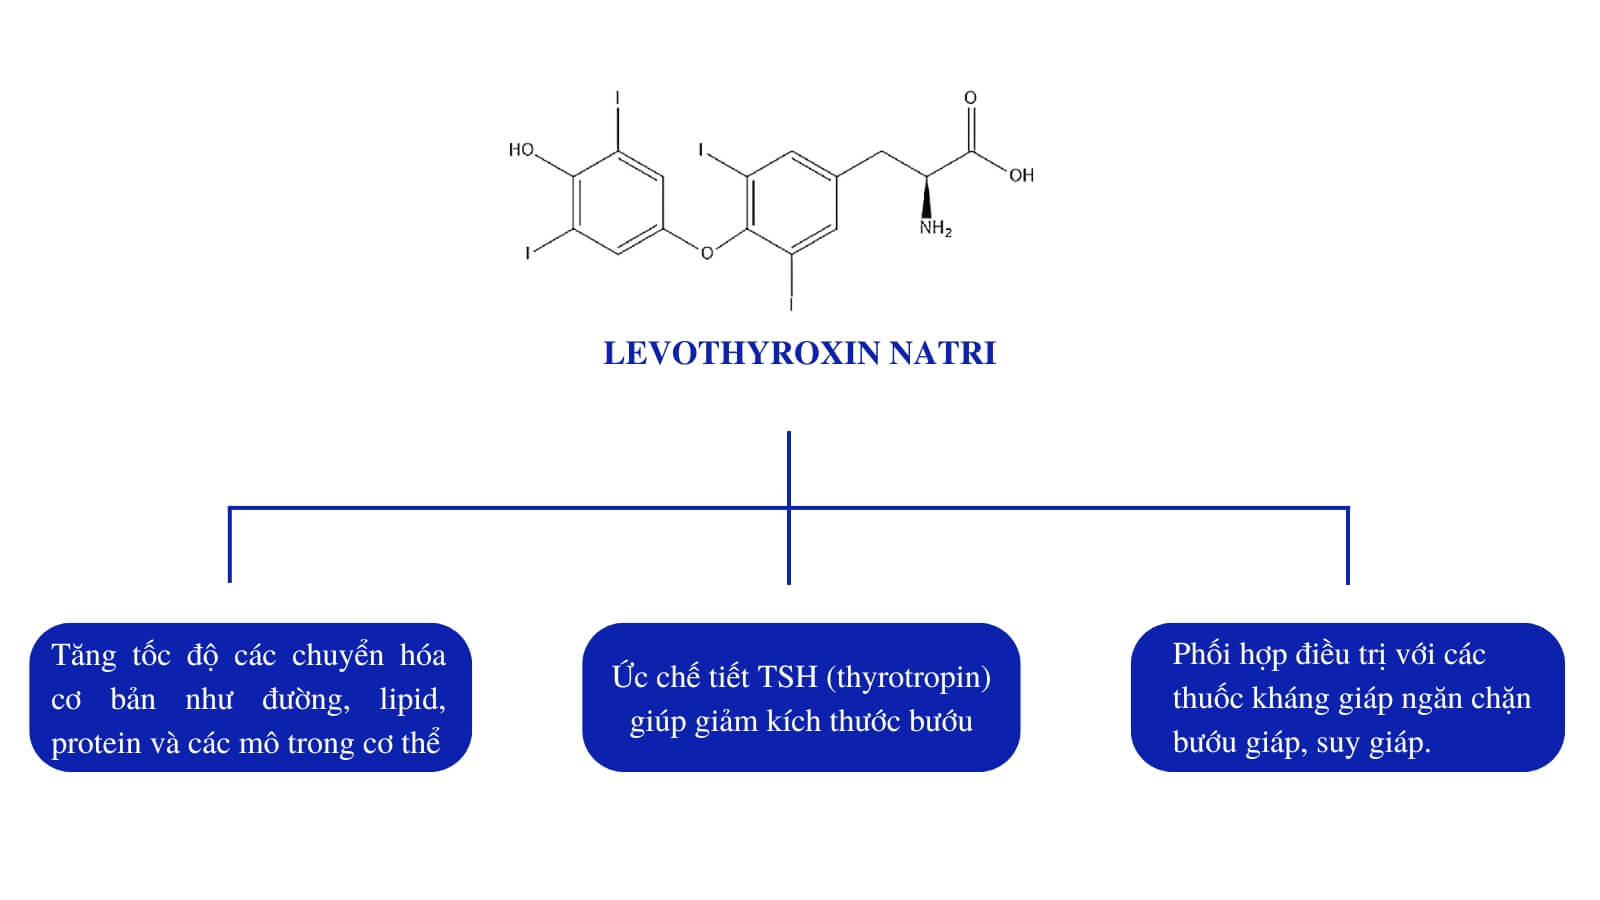 Levothyroxin tăng cường hormone tuyến giáp cho cơ thể